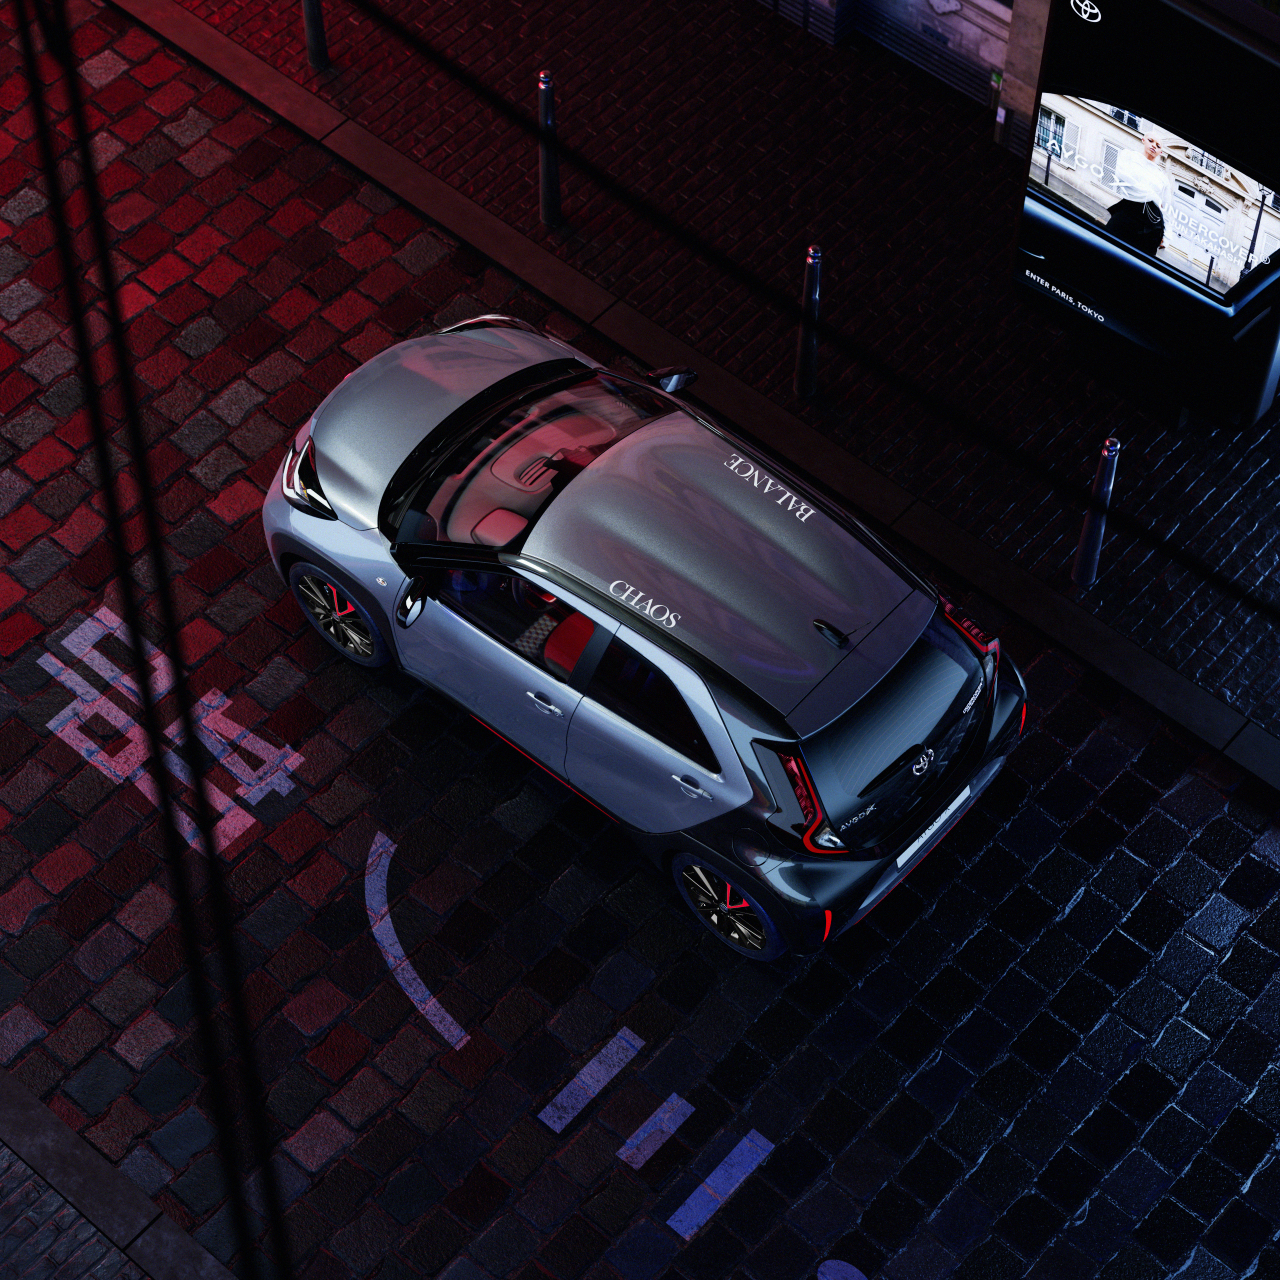 Nowa limitowana wersja Aygo X UNDERCOVER w cenie od 87 900 zł. Ruszyły rezerwacje online na stronie Toyoty